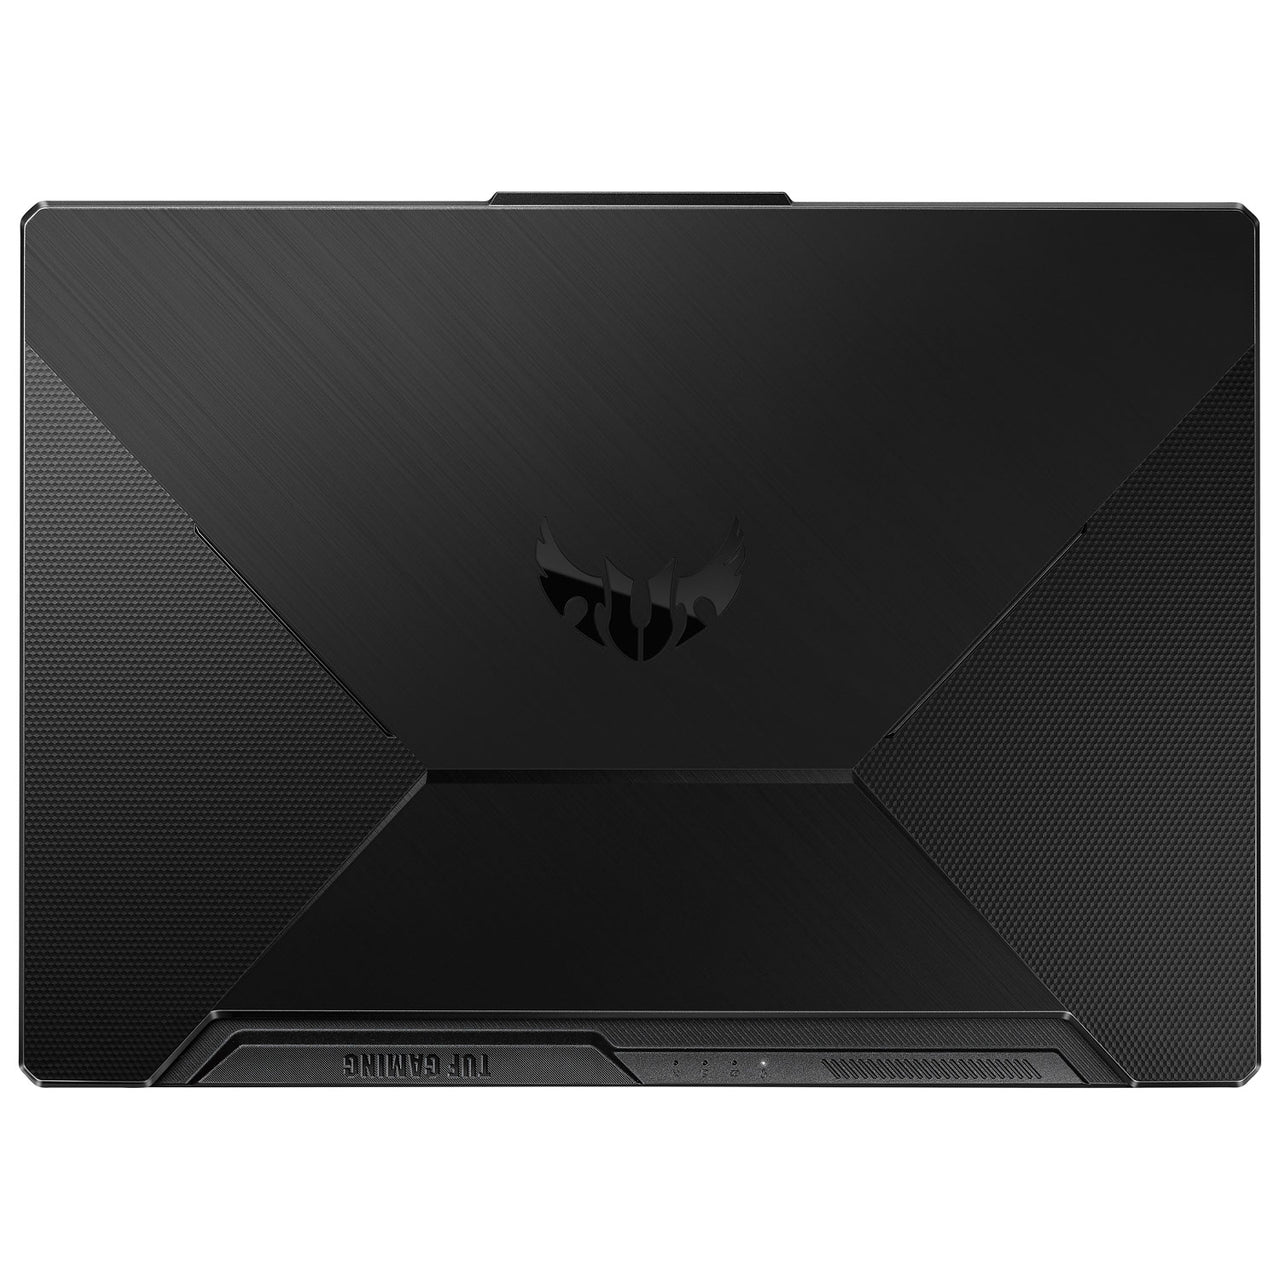 ASUS TUF Gaming F15 15.6" Gaming Laptop (Intel Core i5-10300H/512GB SSD/8GB RAM/GeForce GTX 1650)